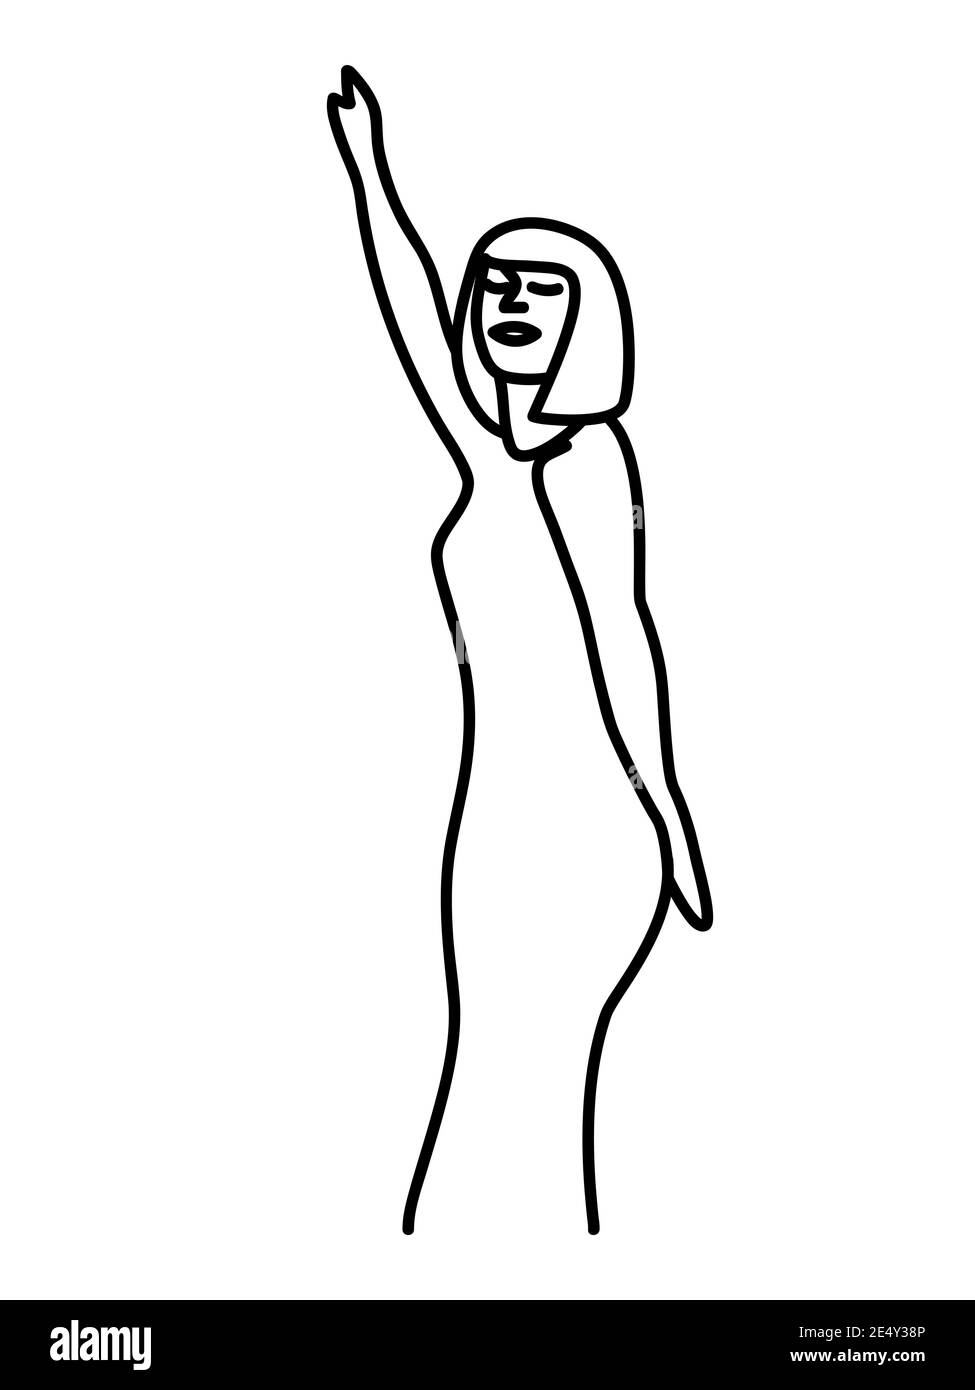 Minimalisme Portrait vectoriel féminin dessiné à la main dans un style moderne abstrait à une ligne. Décoration imprimée, art mural, design créatif pour les medi sociaux Illustration de Vecteur